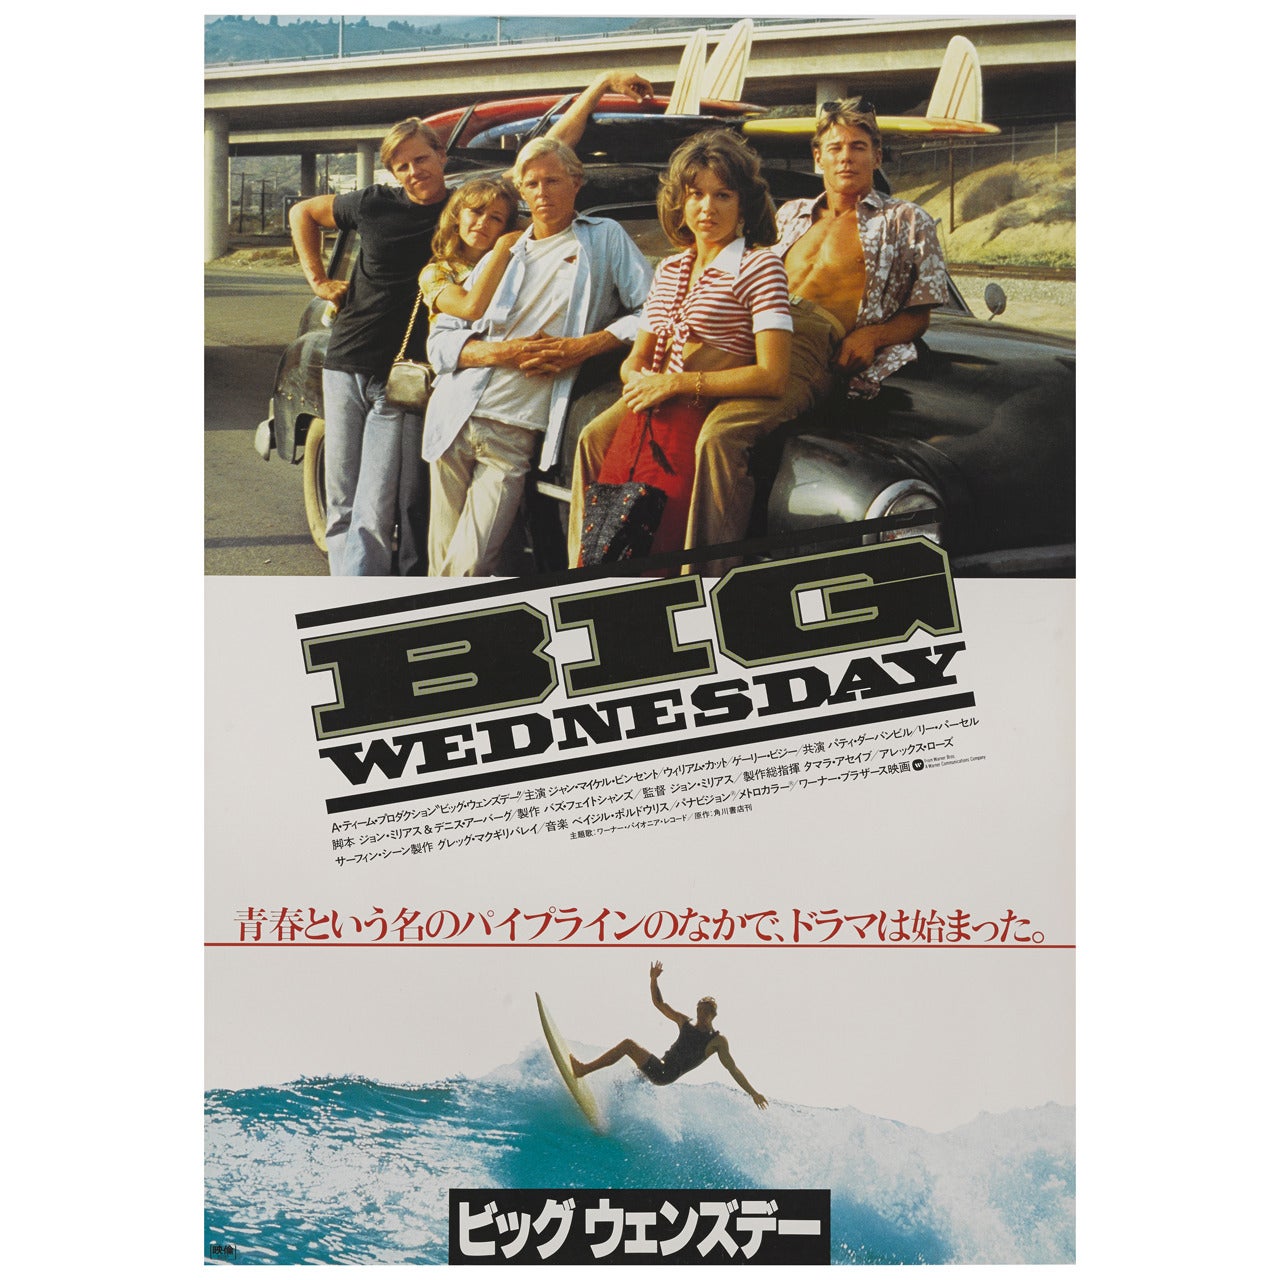 ""Big Wednesday"" Japanisches Filmplakat